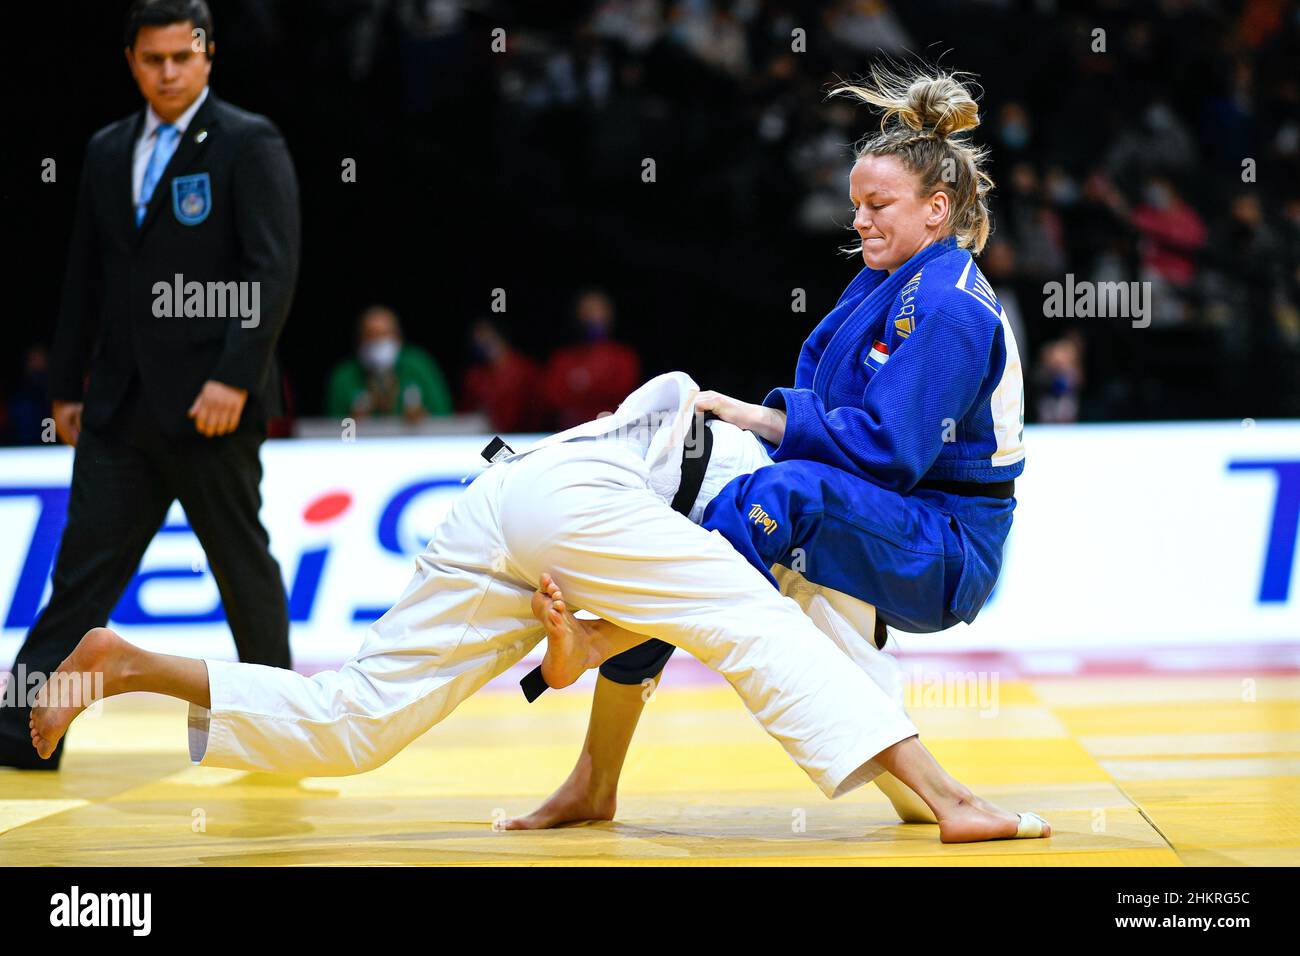 Geke van den Berg des pays-Bas participe au Grand Chelem 2022 de Paris, IJF World Judo Tour le 5 février 2022 à l'Accor Arena de Paris, France - photo Victor Joly / DPPI Banque D'Images